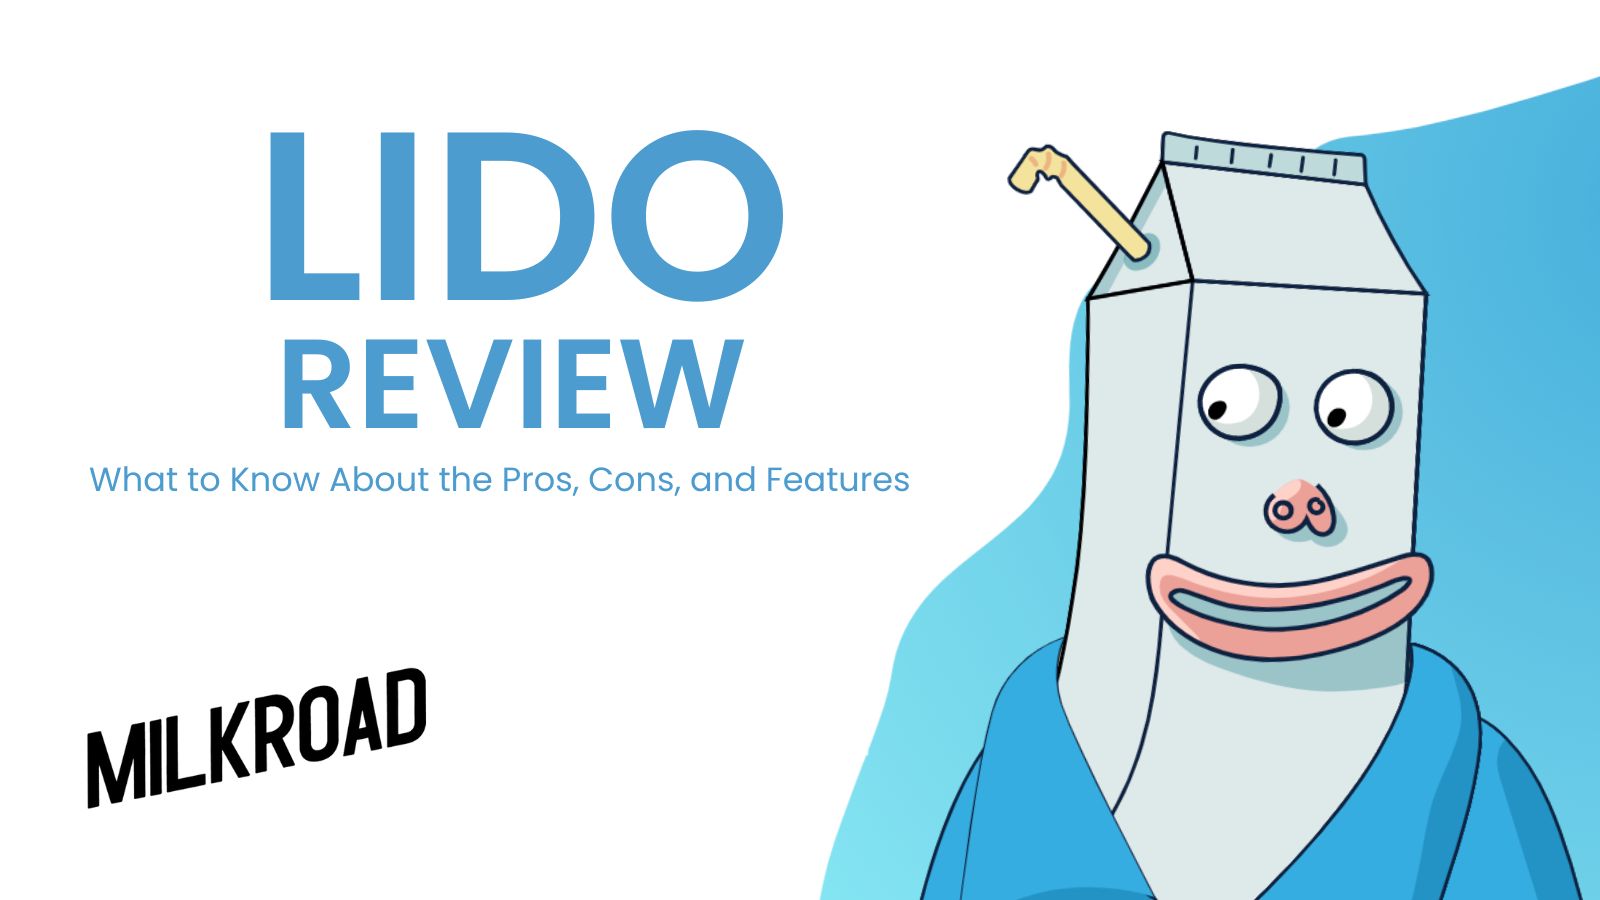 Lido review